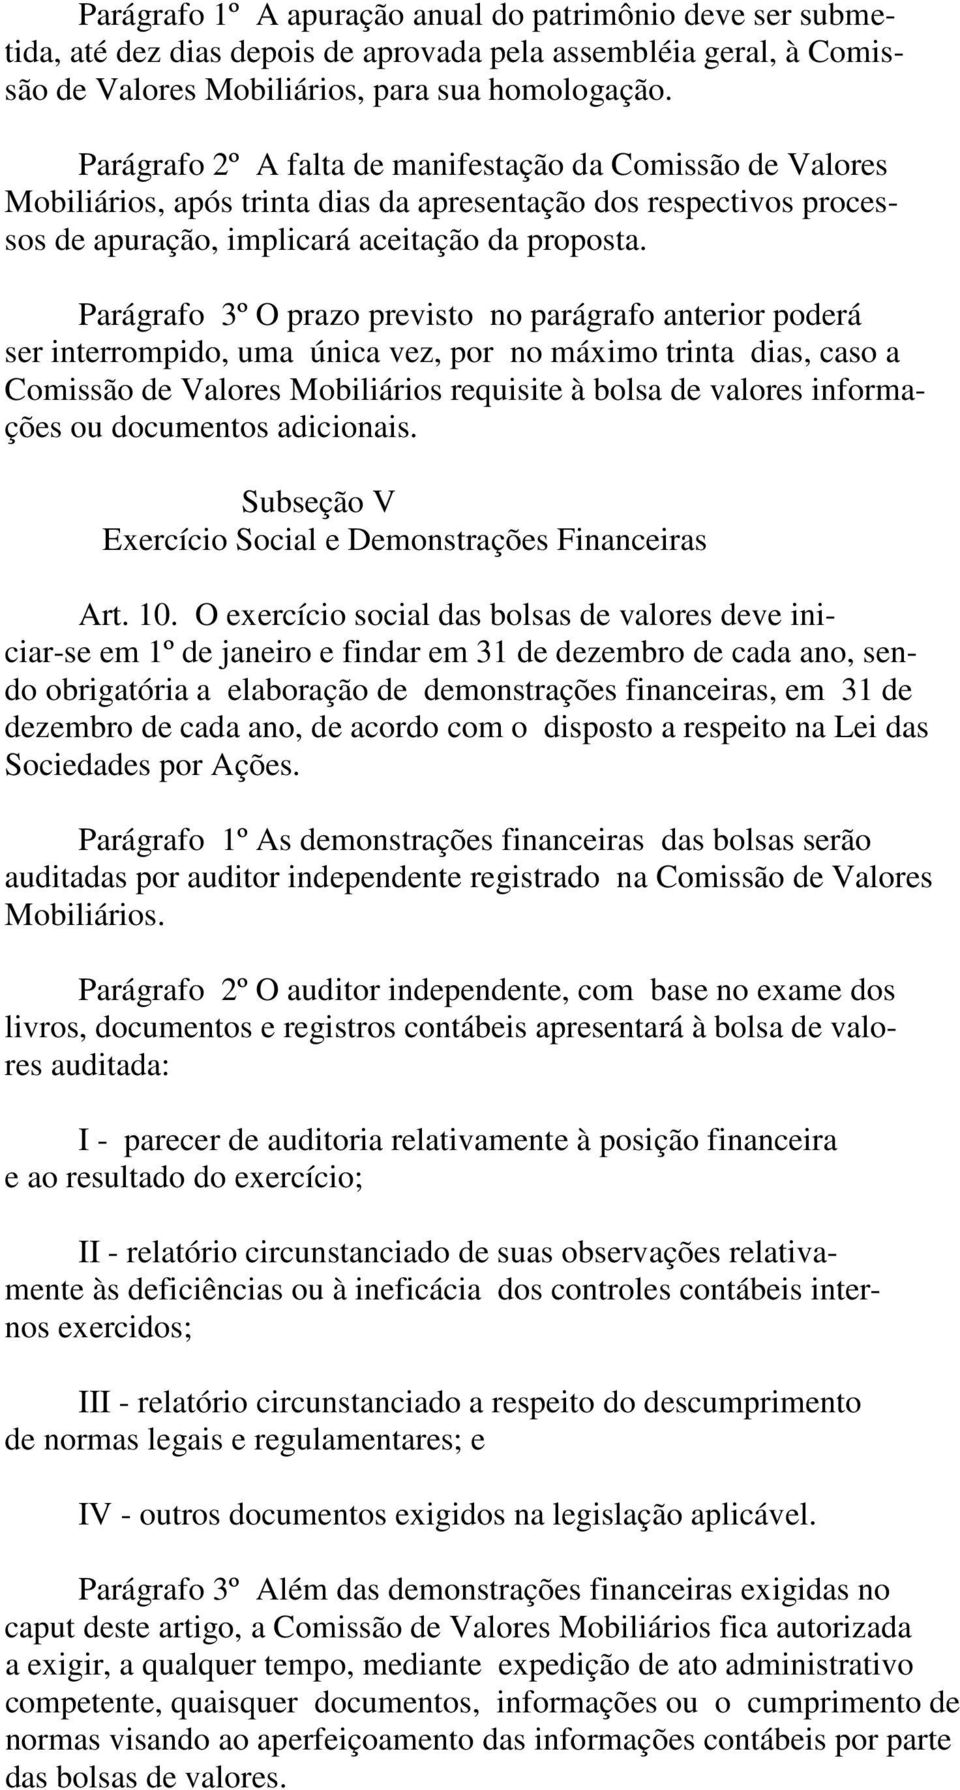 Parágrafo 3º O prazo previsto no parágrafo anterior poderá ser interrompido, uma única vez, por no máximo trinta dias, caso a Comissão de Valores Mobiliários requisite à bolsa de valores informações